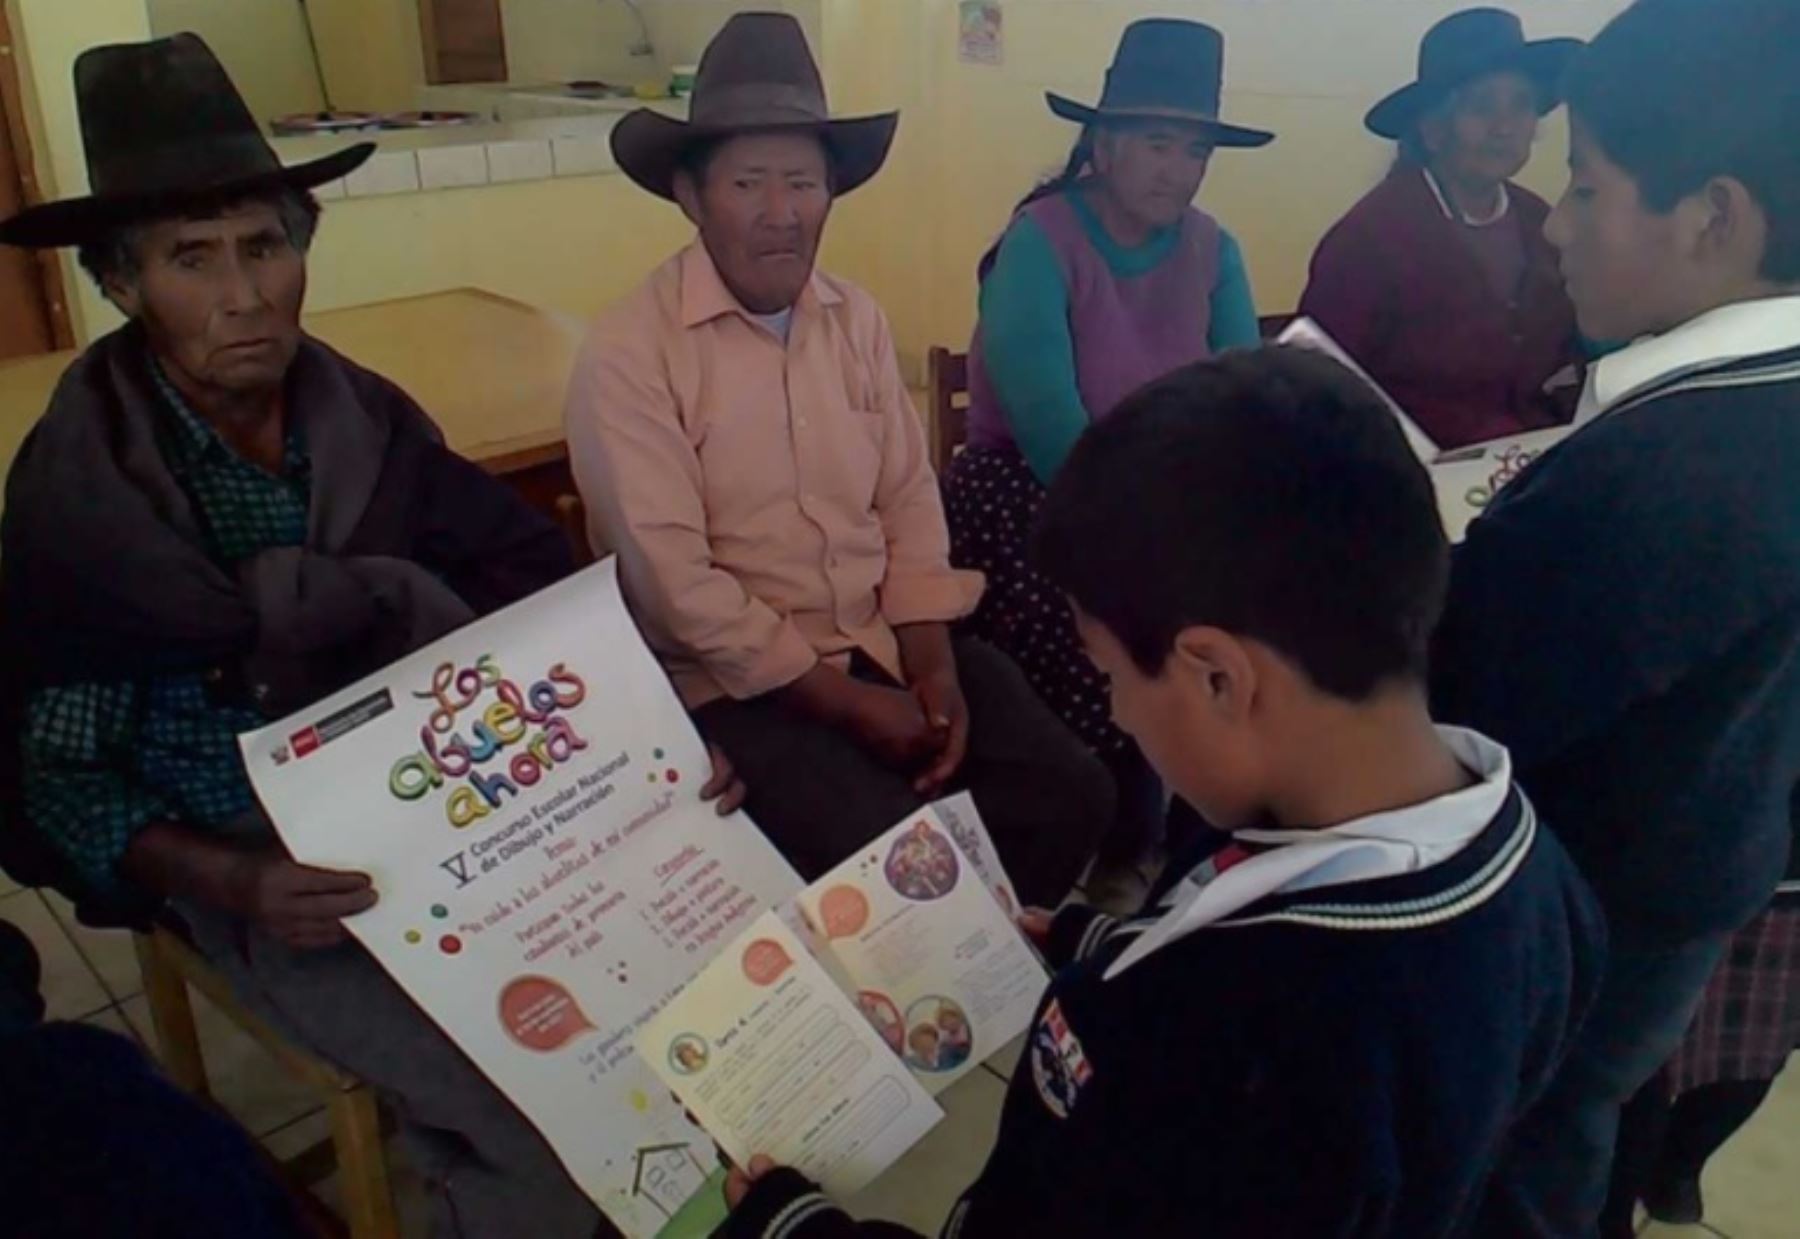 Las regiones de Piura y Cajamarca registran, hasta la fecha, la mayor cantidad de participantes al Concurso Nacional Escolar de Dibujo y Narración “Los Abuelos Ahora”, convocado por el Programa Nacional de Asistencia Solidaria Pensión 65 del Ministerio de Desarrollo e Inclusión Social (Midis), cuya convocatoria termina el próximo 9 de octubre.